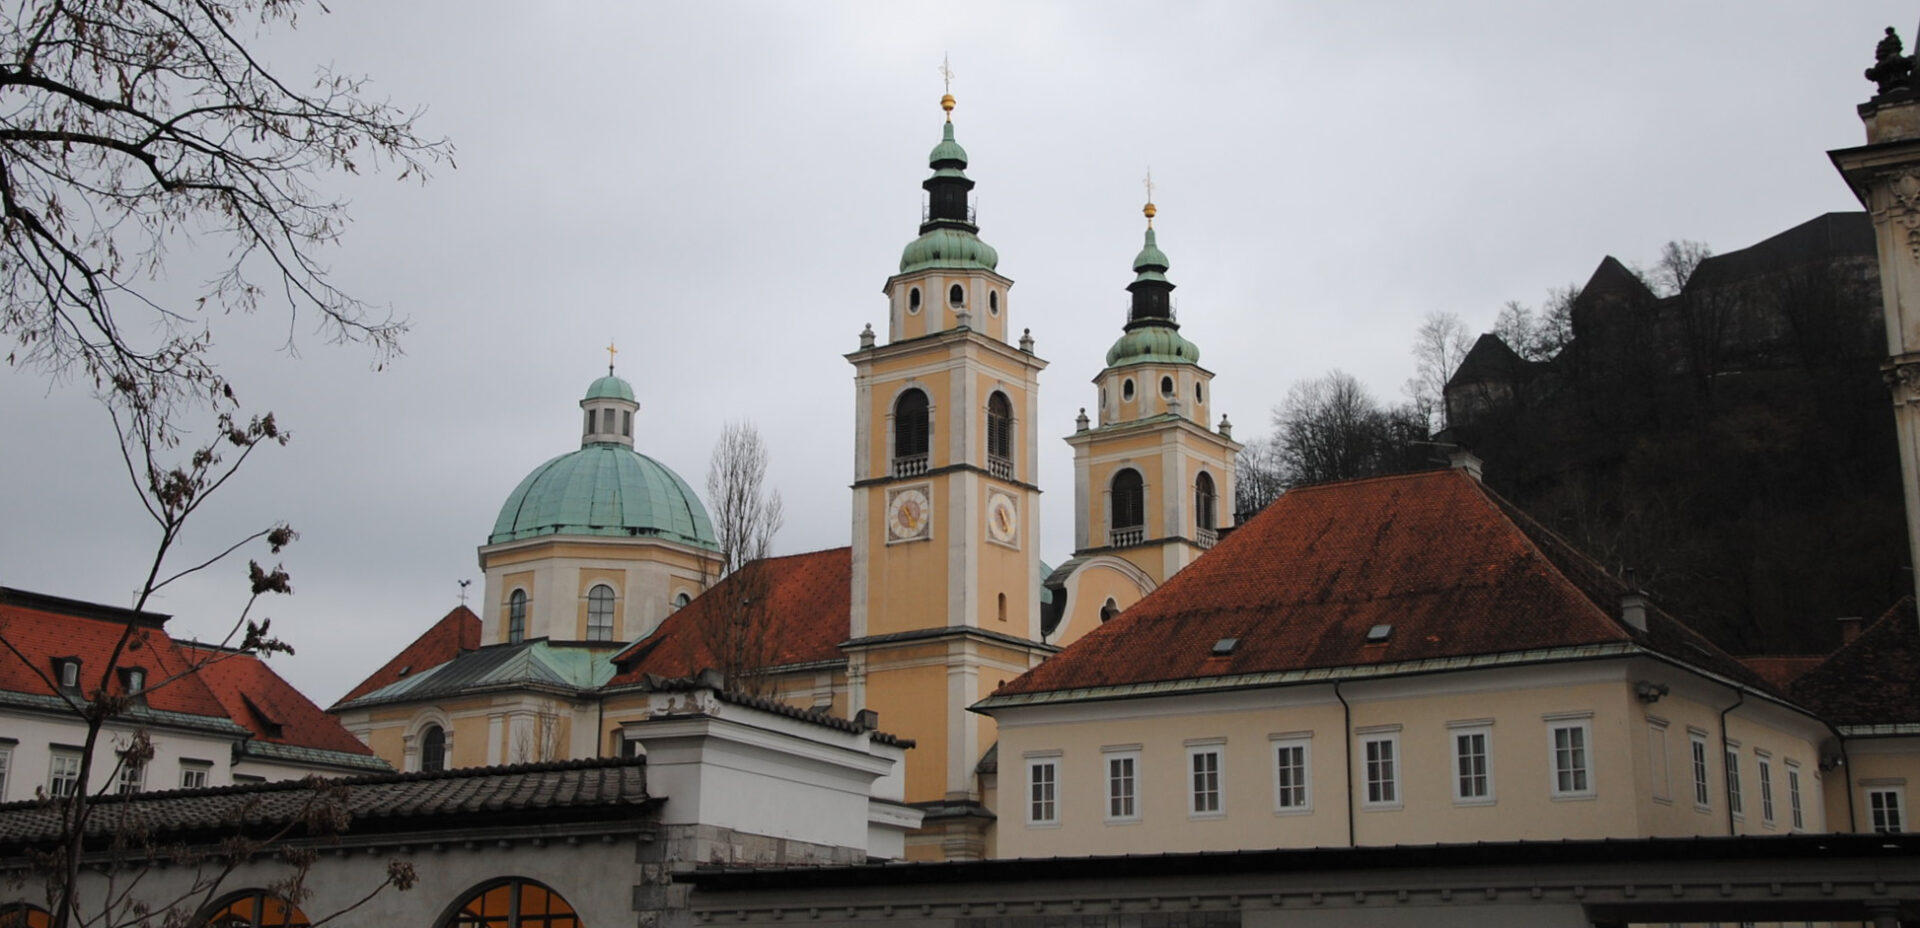 La Communauté de Loyola a été fondée dans les années 1980 dans le diocèse de Ljubljana, en Slovénie | photo: cathédrale St-Nicolas de Ljubljana © Leandro Neumann Ciuffo/Flickr/CC BY 2.0